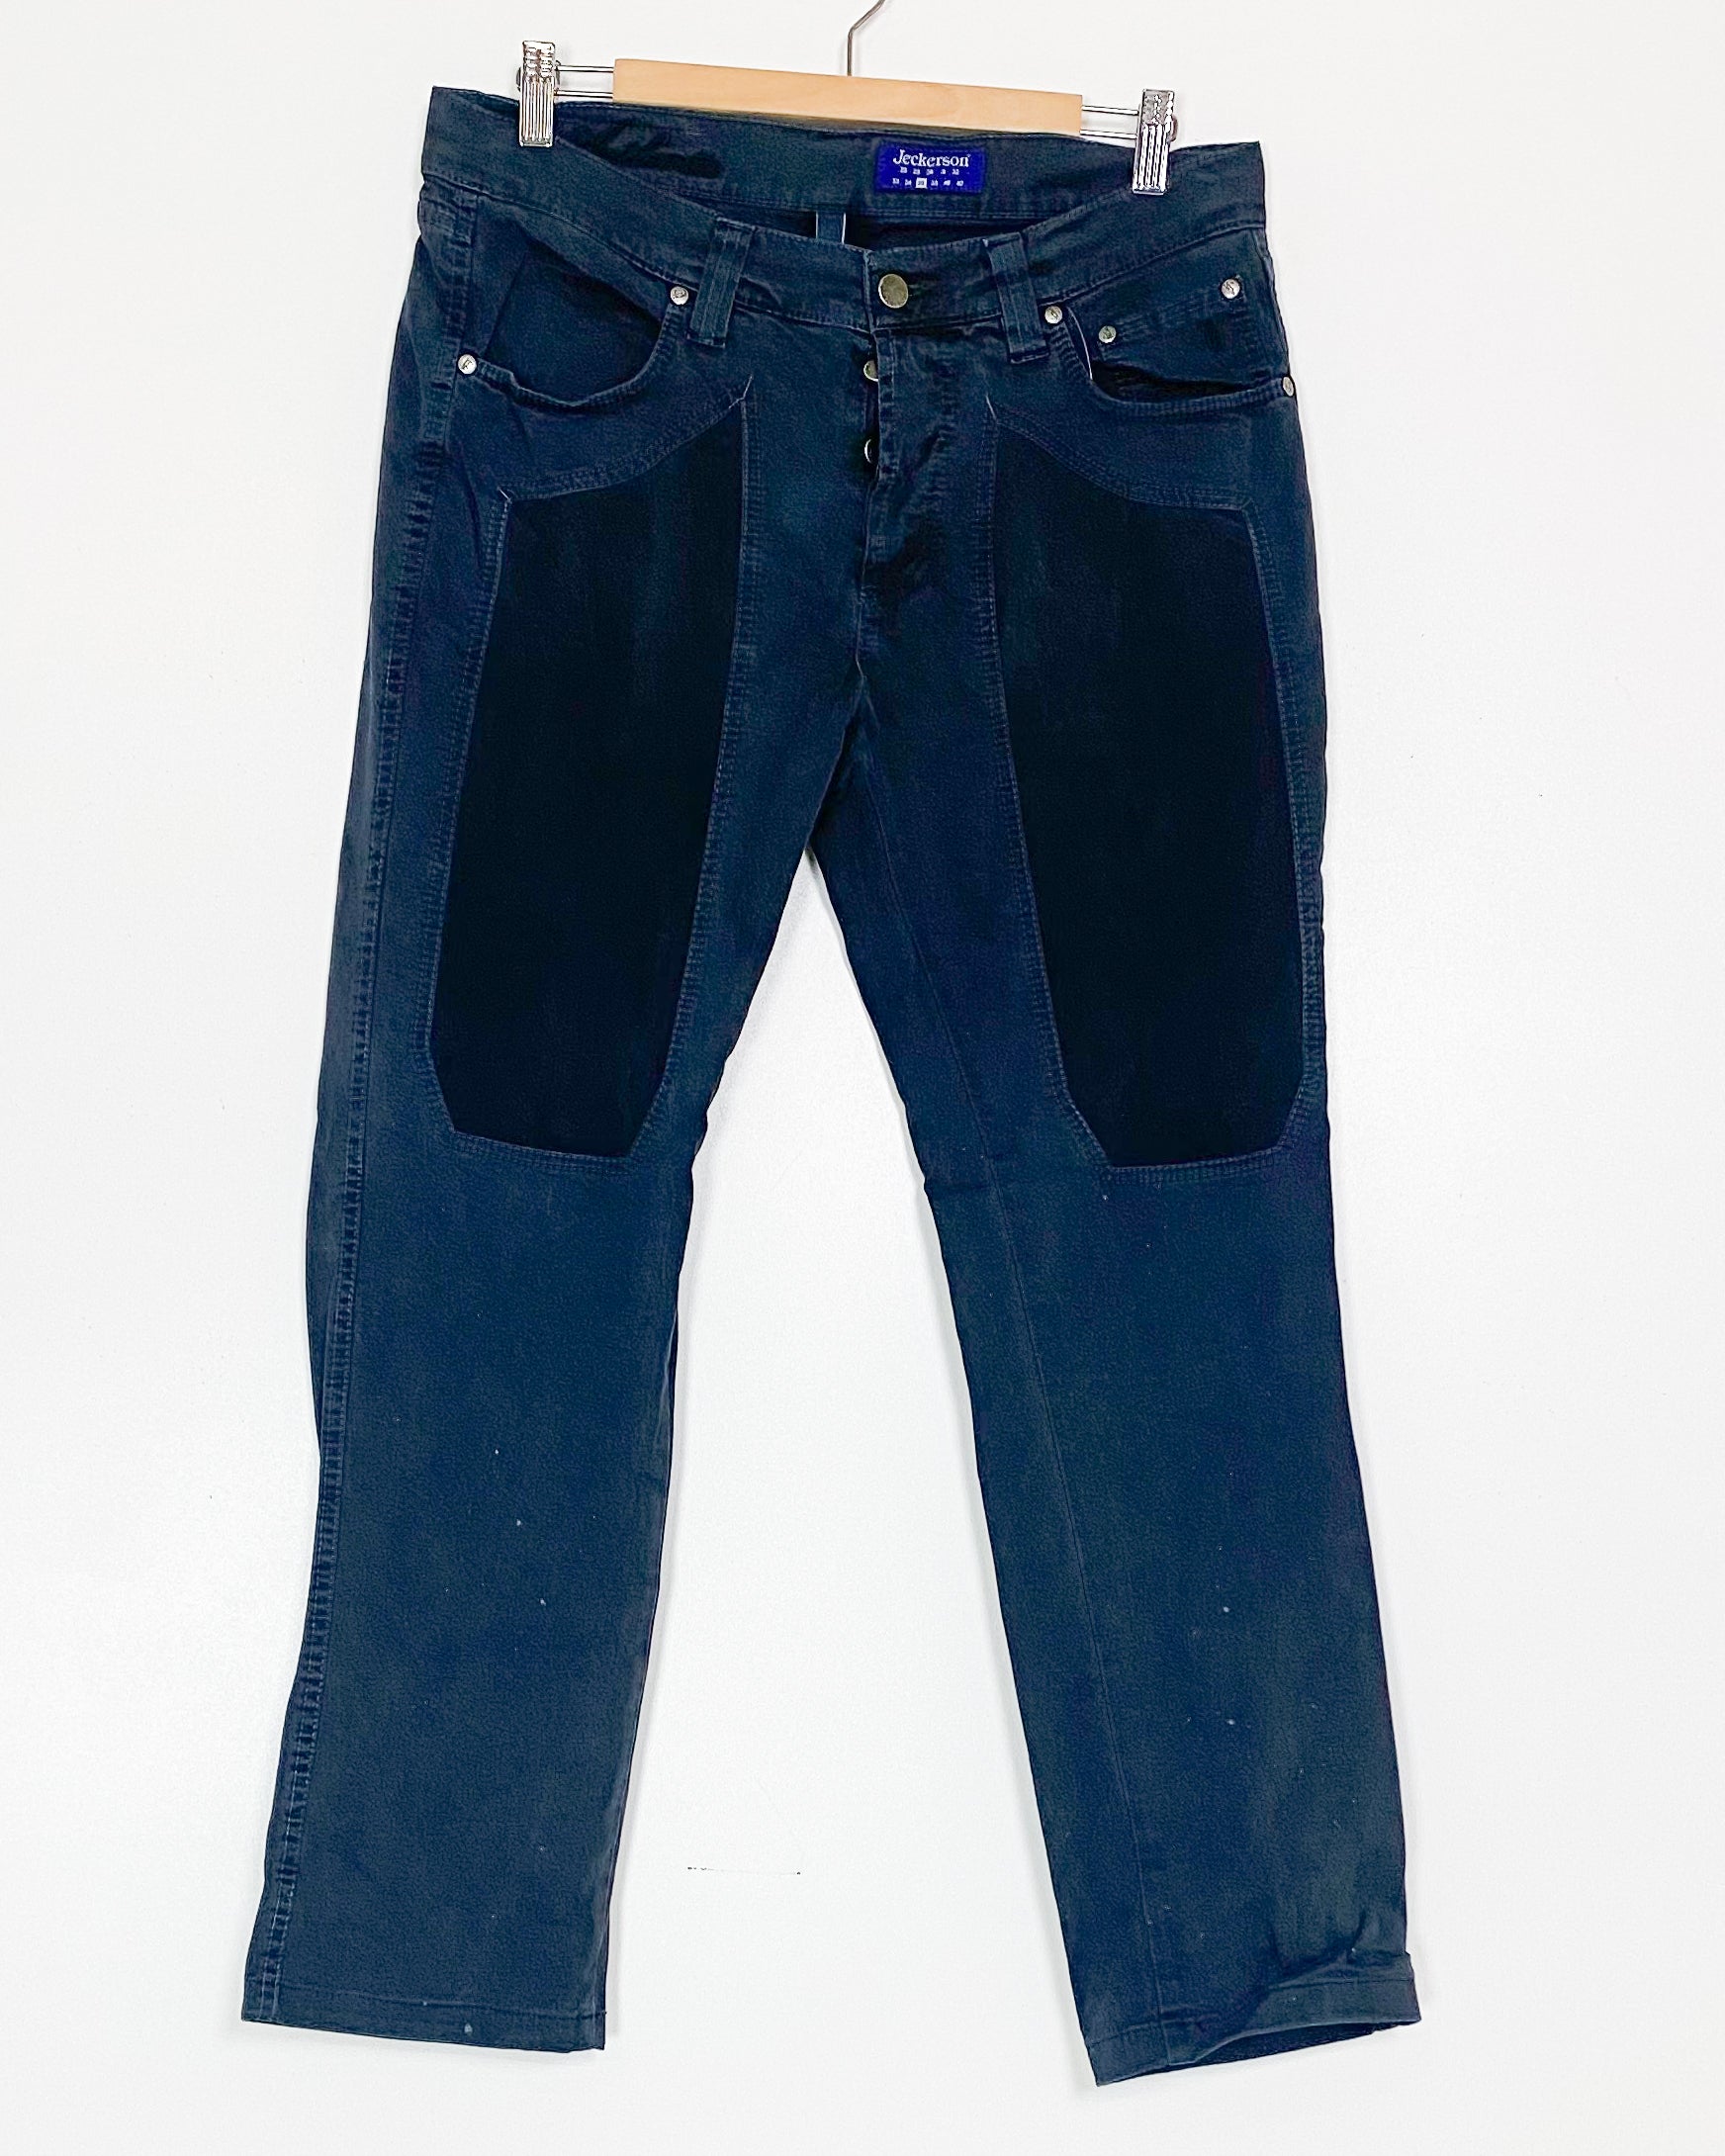 Jeans Double Knee - Ita 50